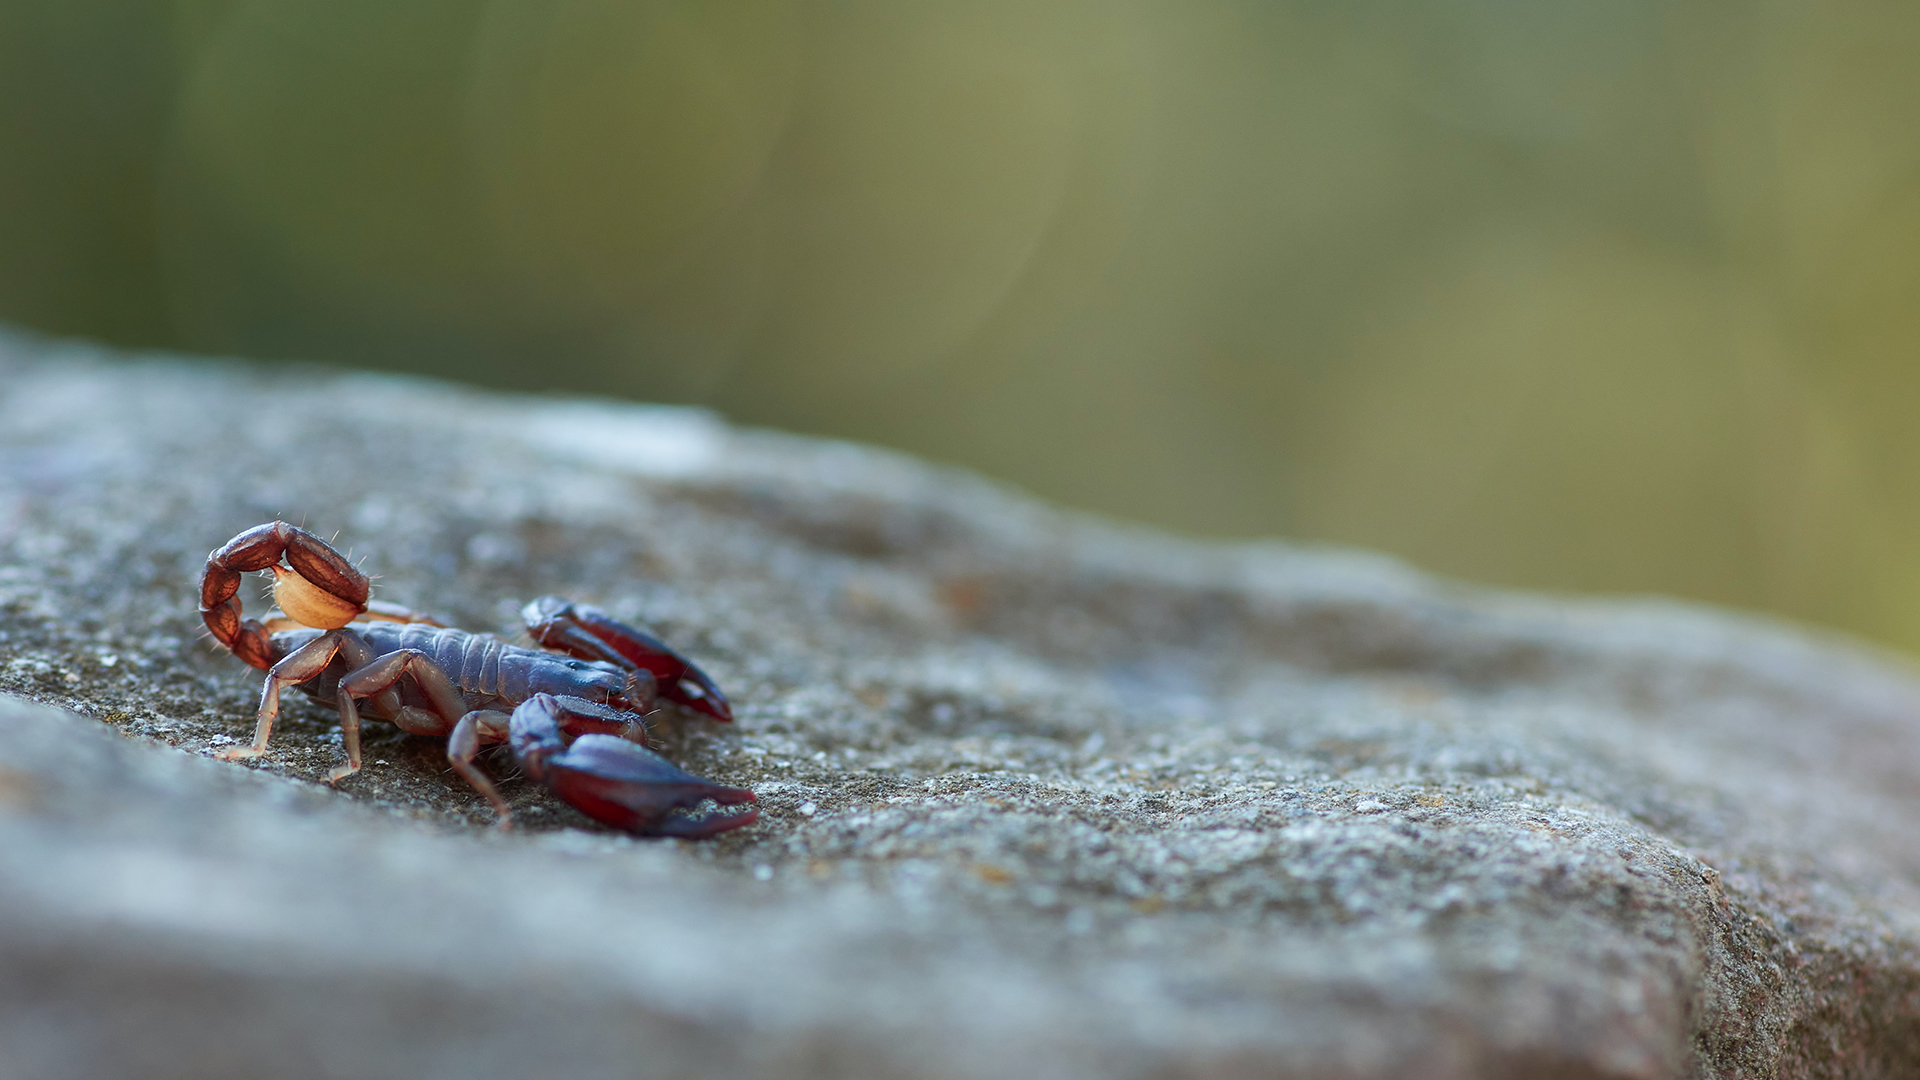 Bild von einem Scorpion